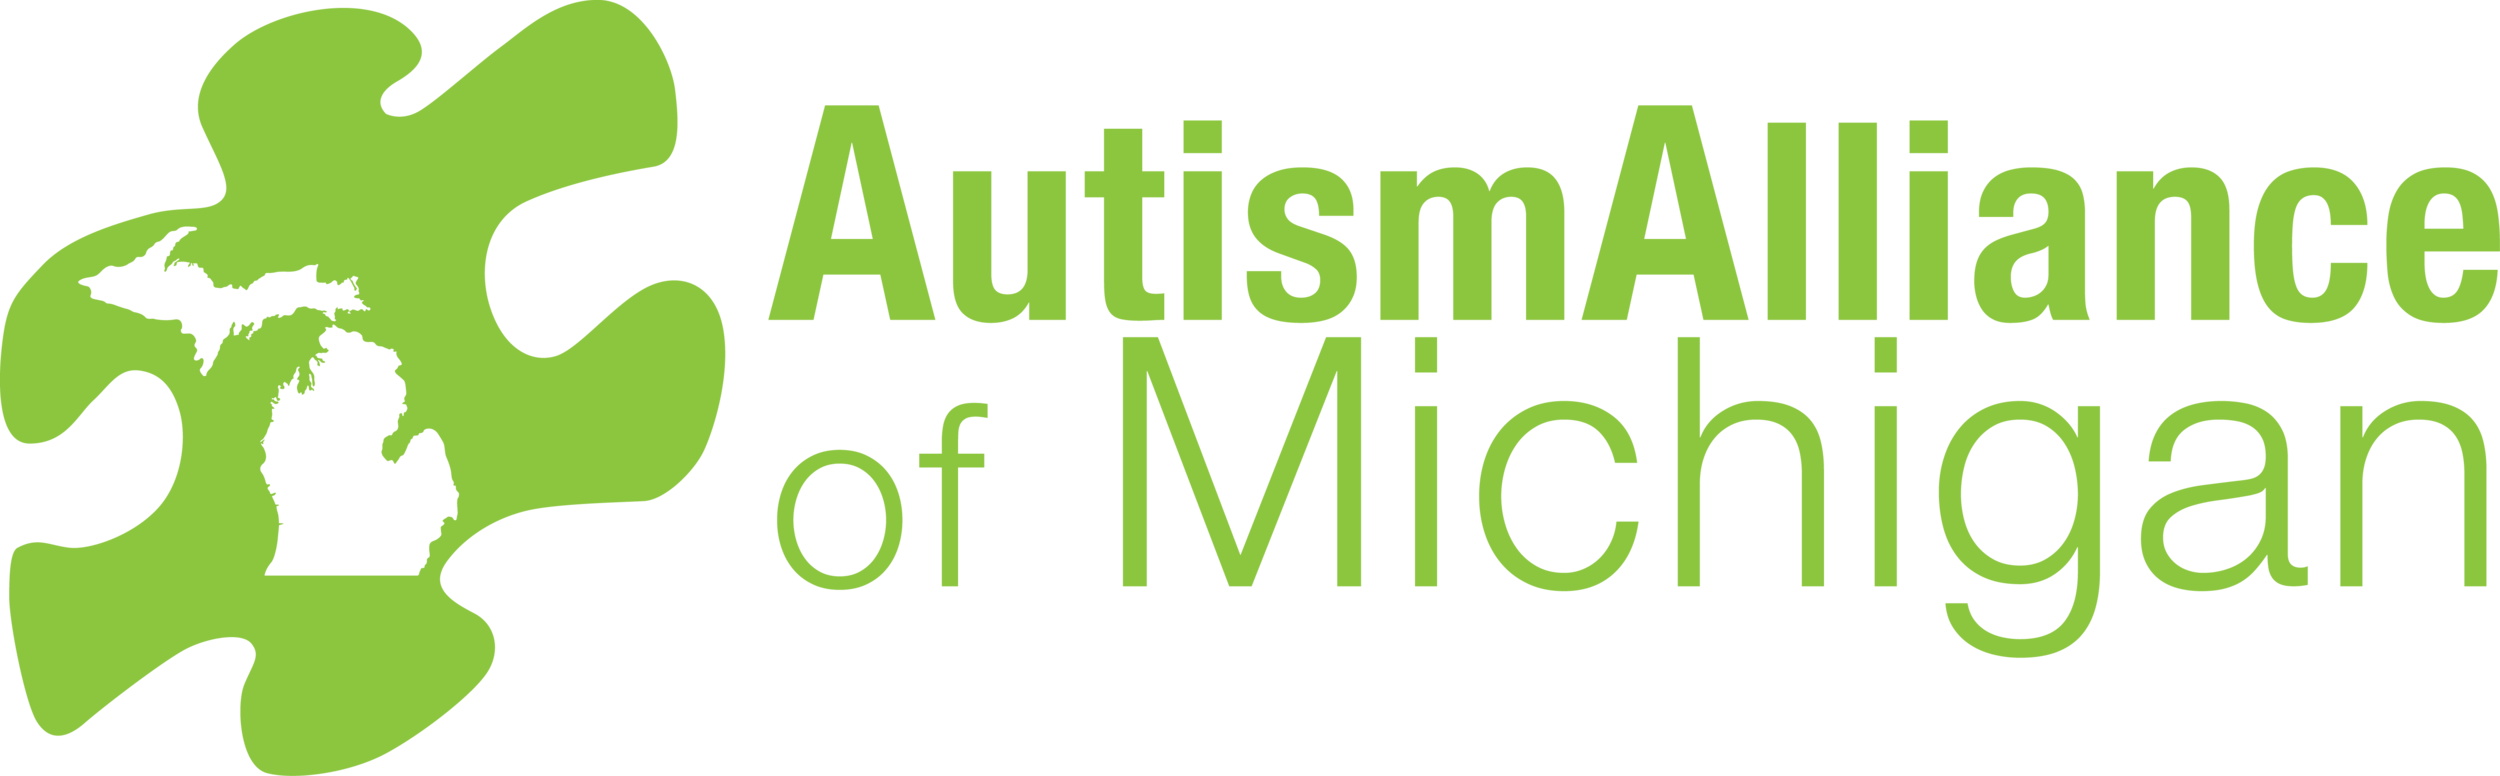 Autism Alliance of Michigan logo.